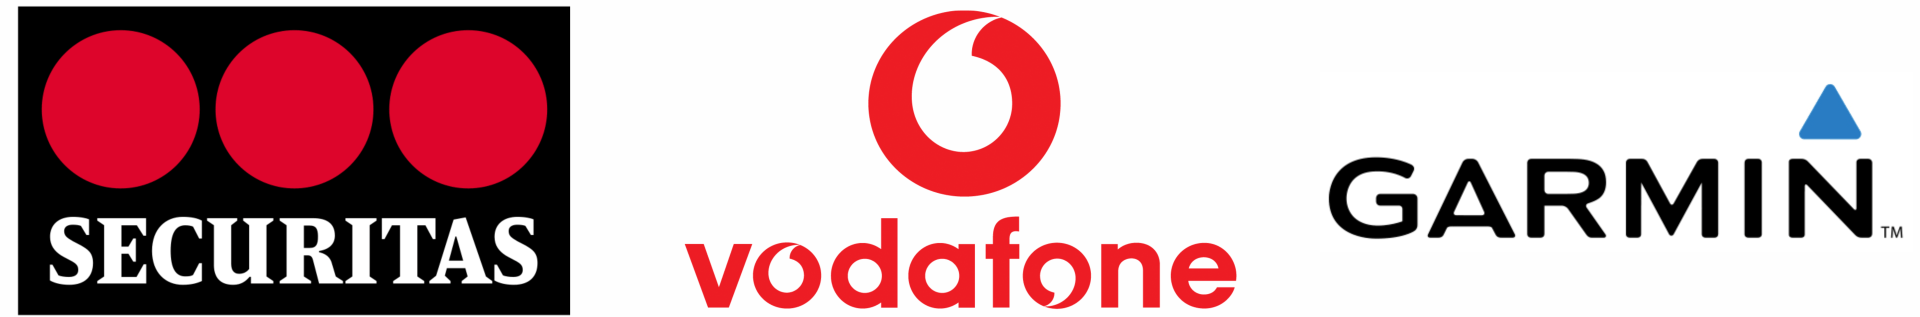 Securitas / Vodafone / Garmin